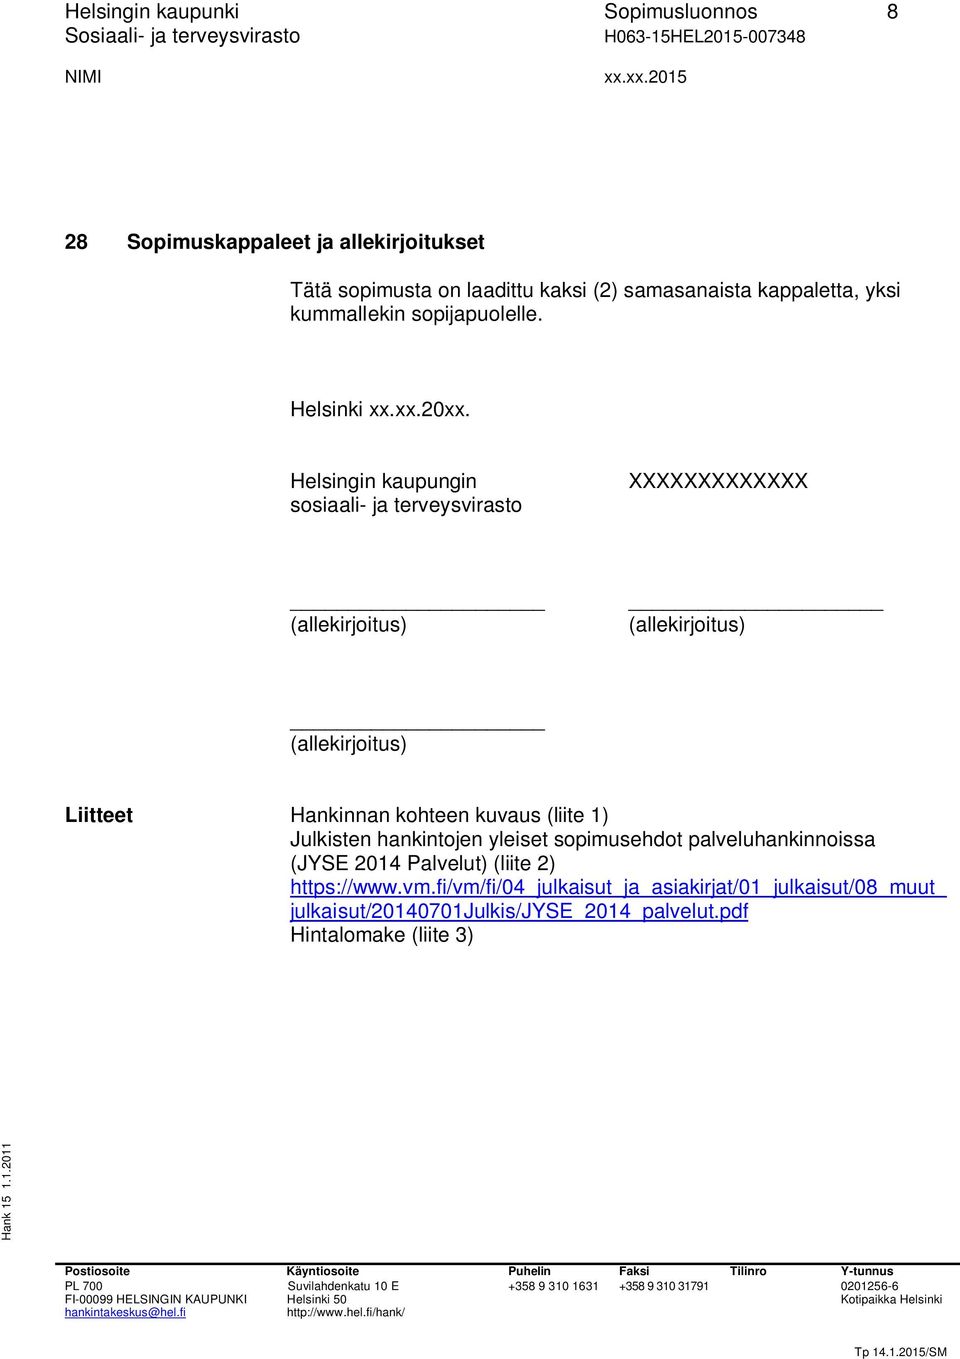 Helsingin kaupungin sosiaali- ja terveysvirasto XXXXXXXXXXXXX (allekirjoitus) (allekirjoitus) (allekirjoitus) Liitteet Hankinnan kohteen kuvaus